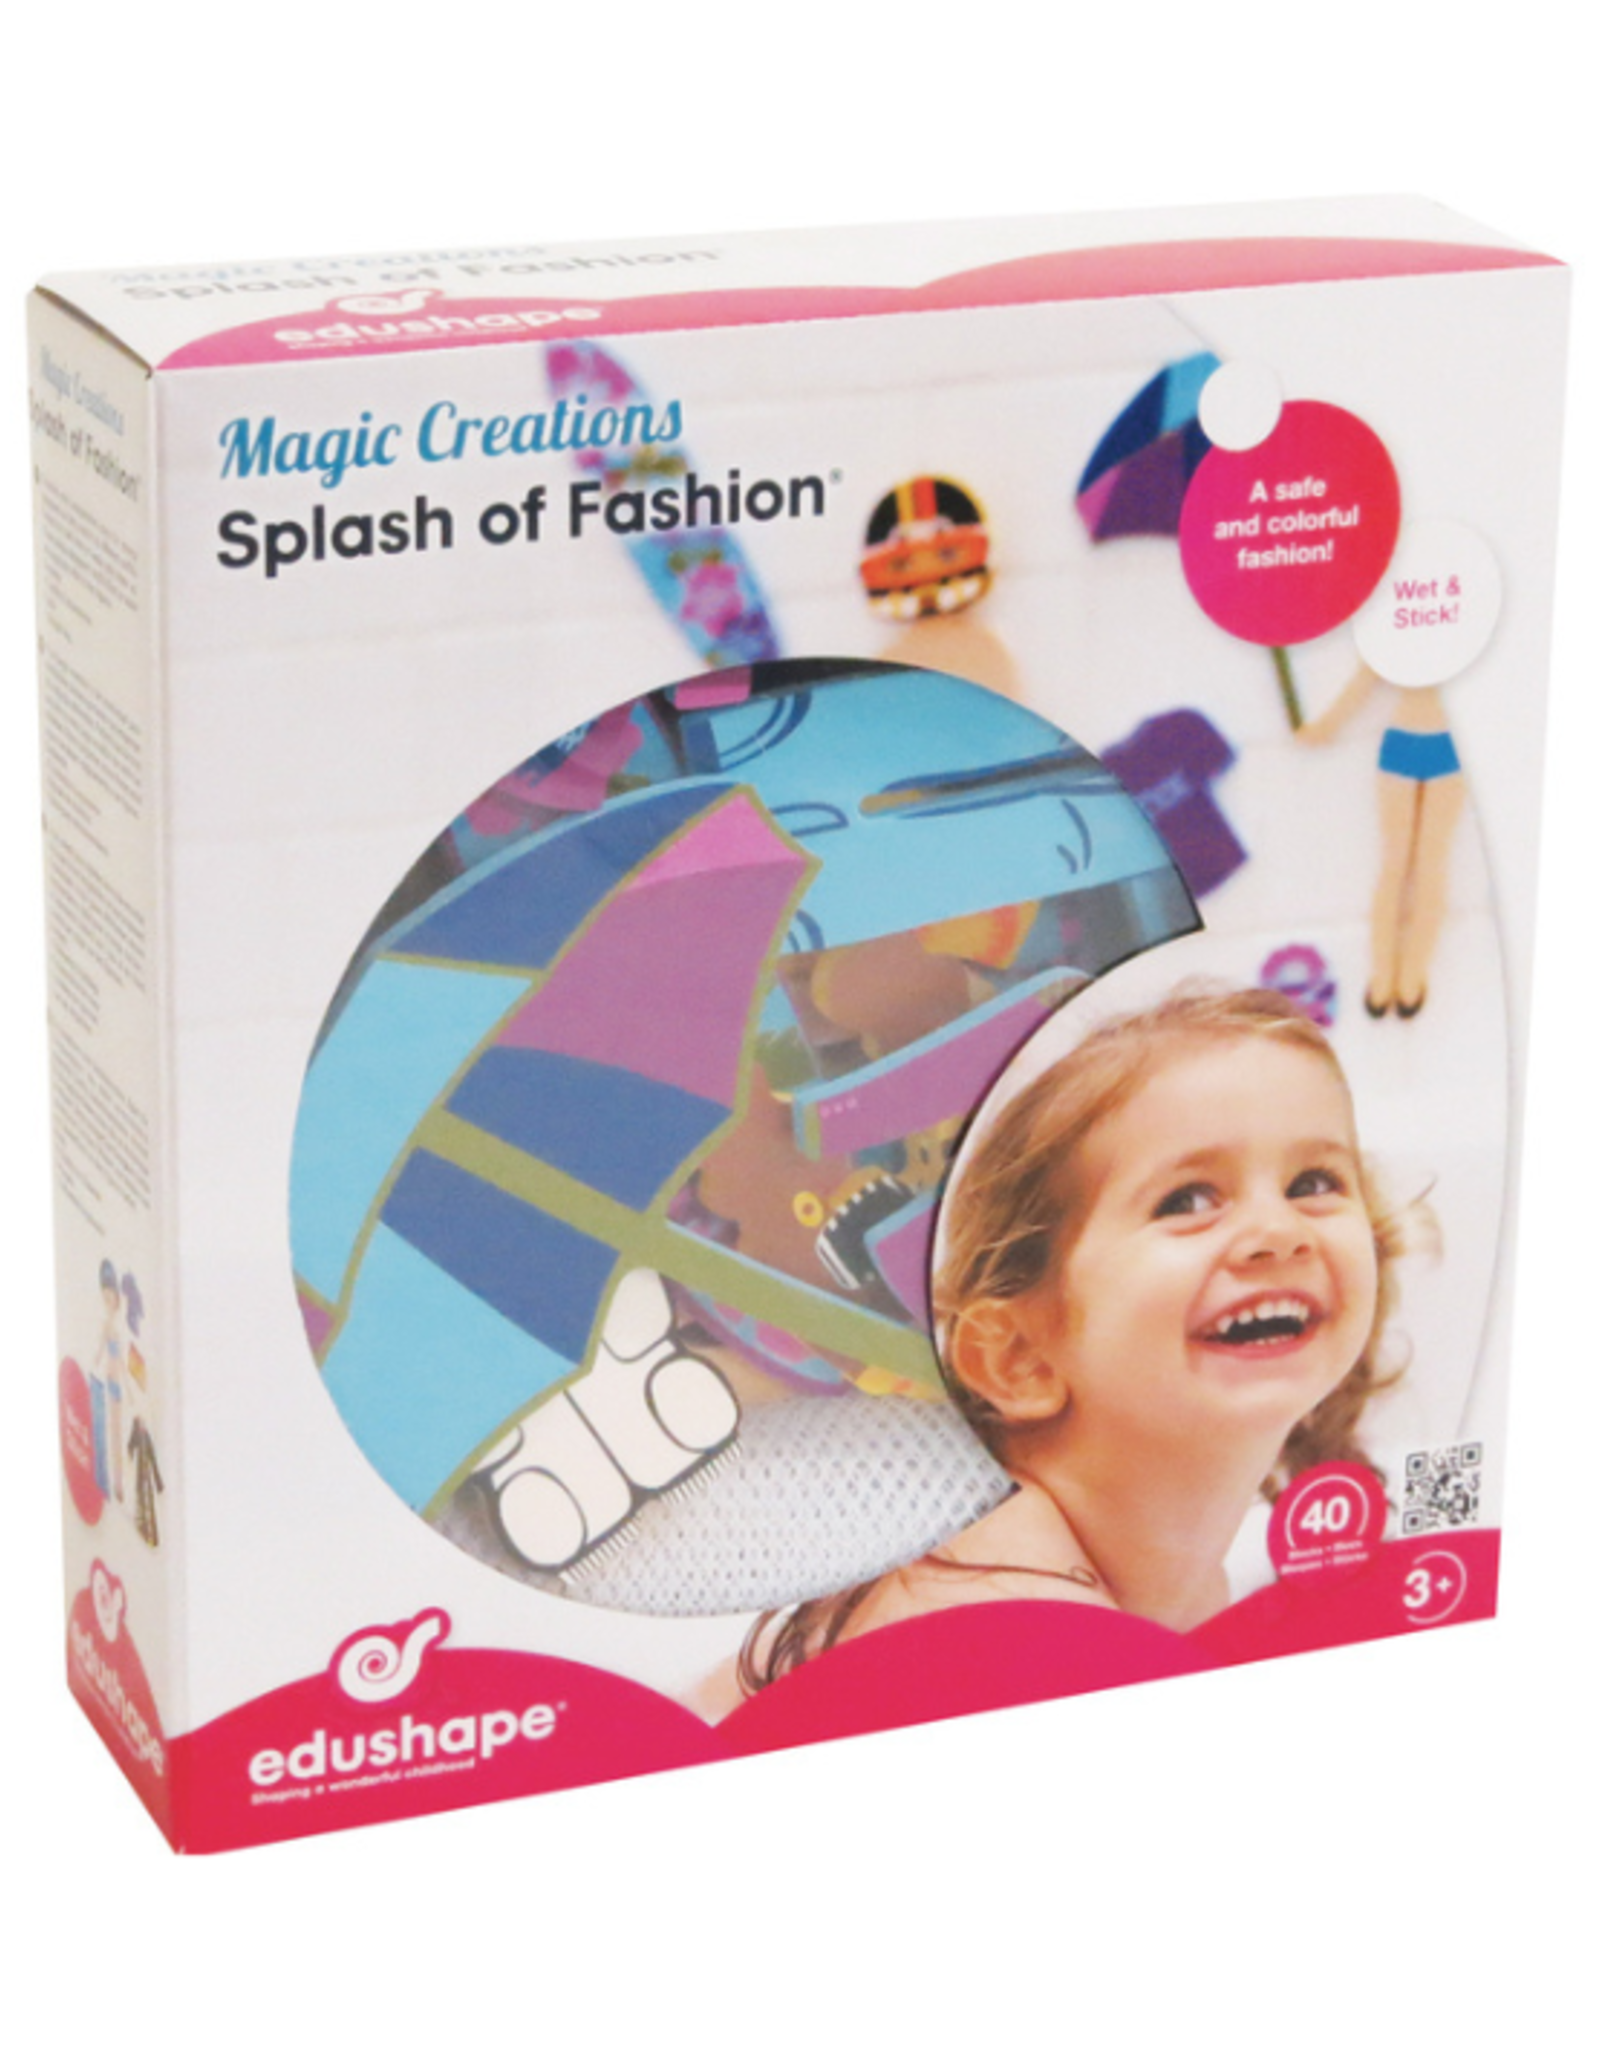 Edushape - Magic Creations Splash of Fashion